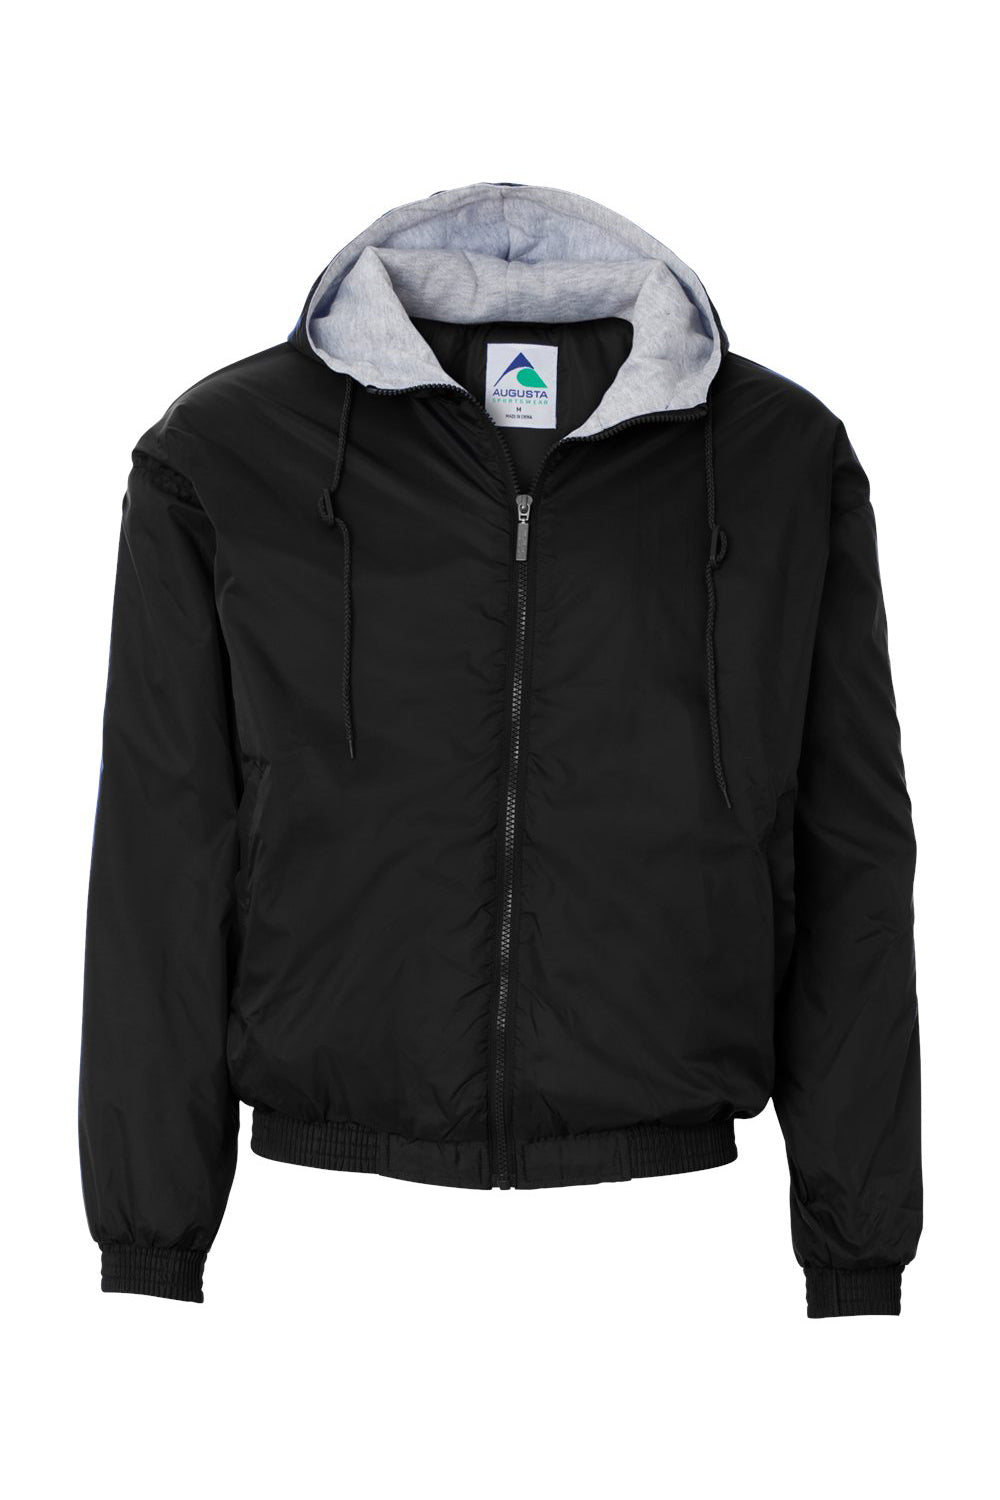 Augusta Sportswear 3280 Mens Full Zip Hooded Jacket Black Flat Front